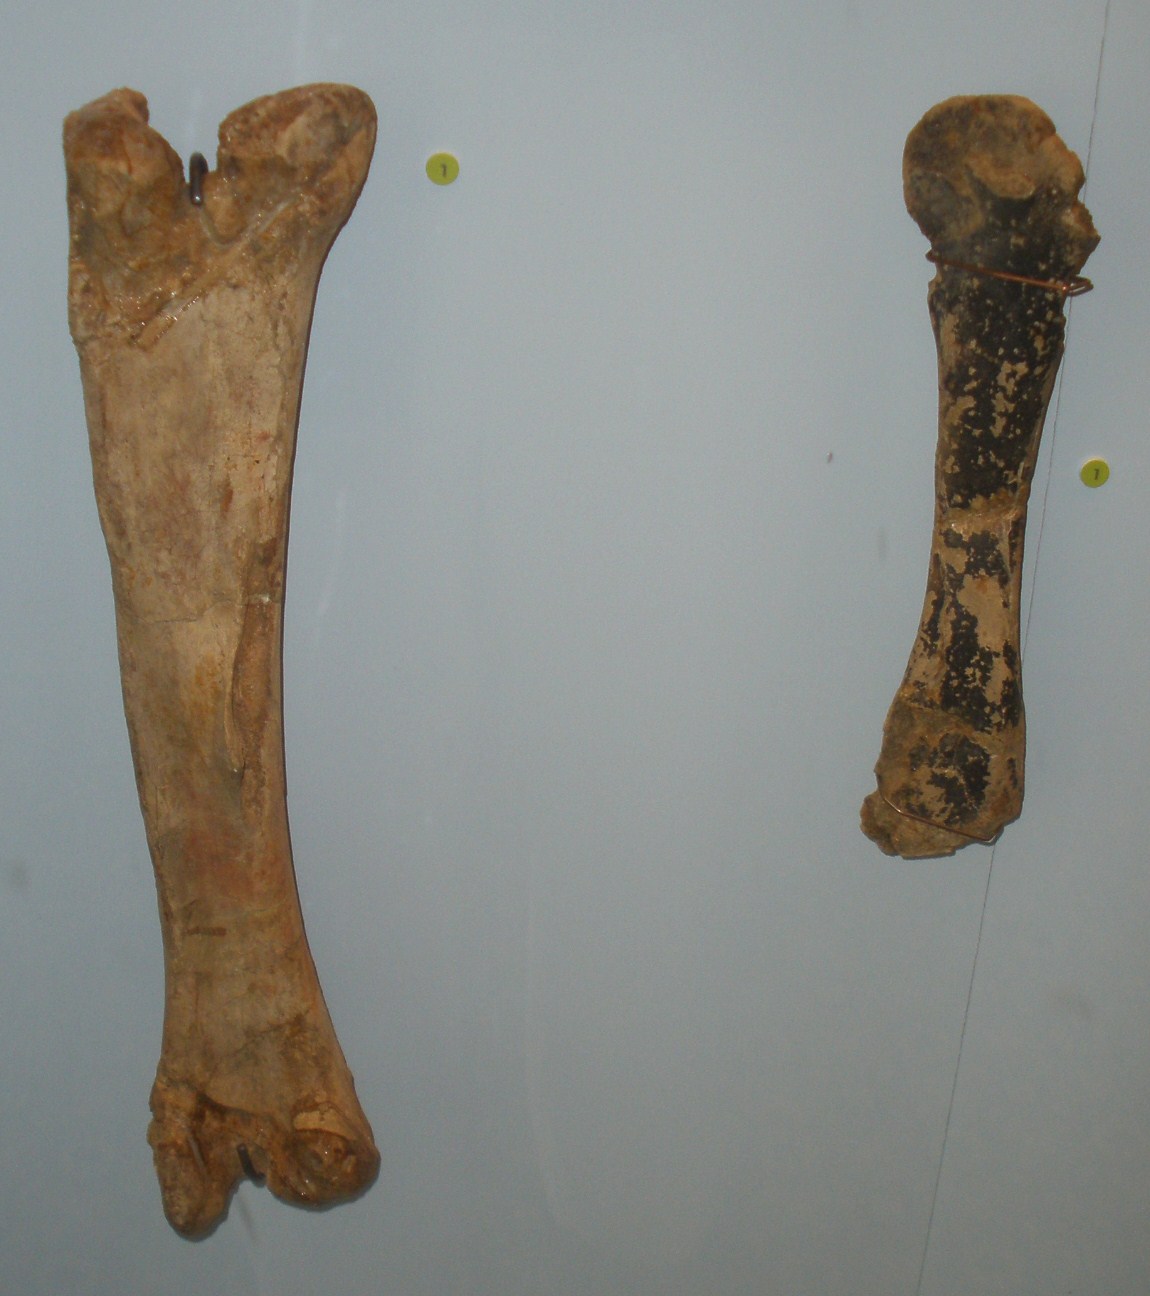 Fosilní kosti končetin druhu Orthomerus dolloi, pozdně křídového hadrosauroida, žijícího v době před 70 až 66 miliony let na území dnešního Nizozemska. Ukrajinský dinosaurus byl Rjabininem přiřazen právě k tomu rodu, dnes už je ale jisté, že se ve sk